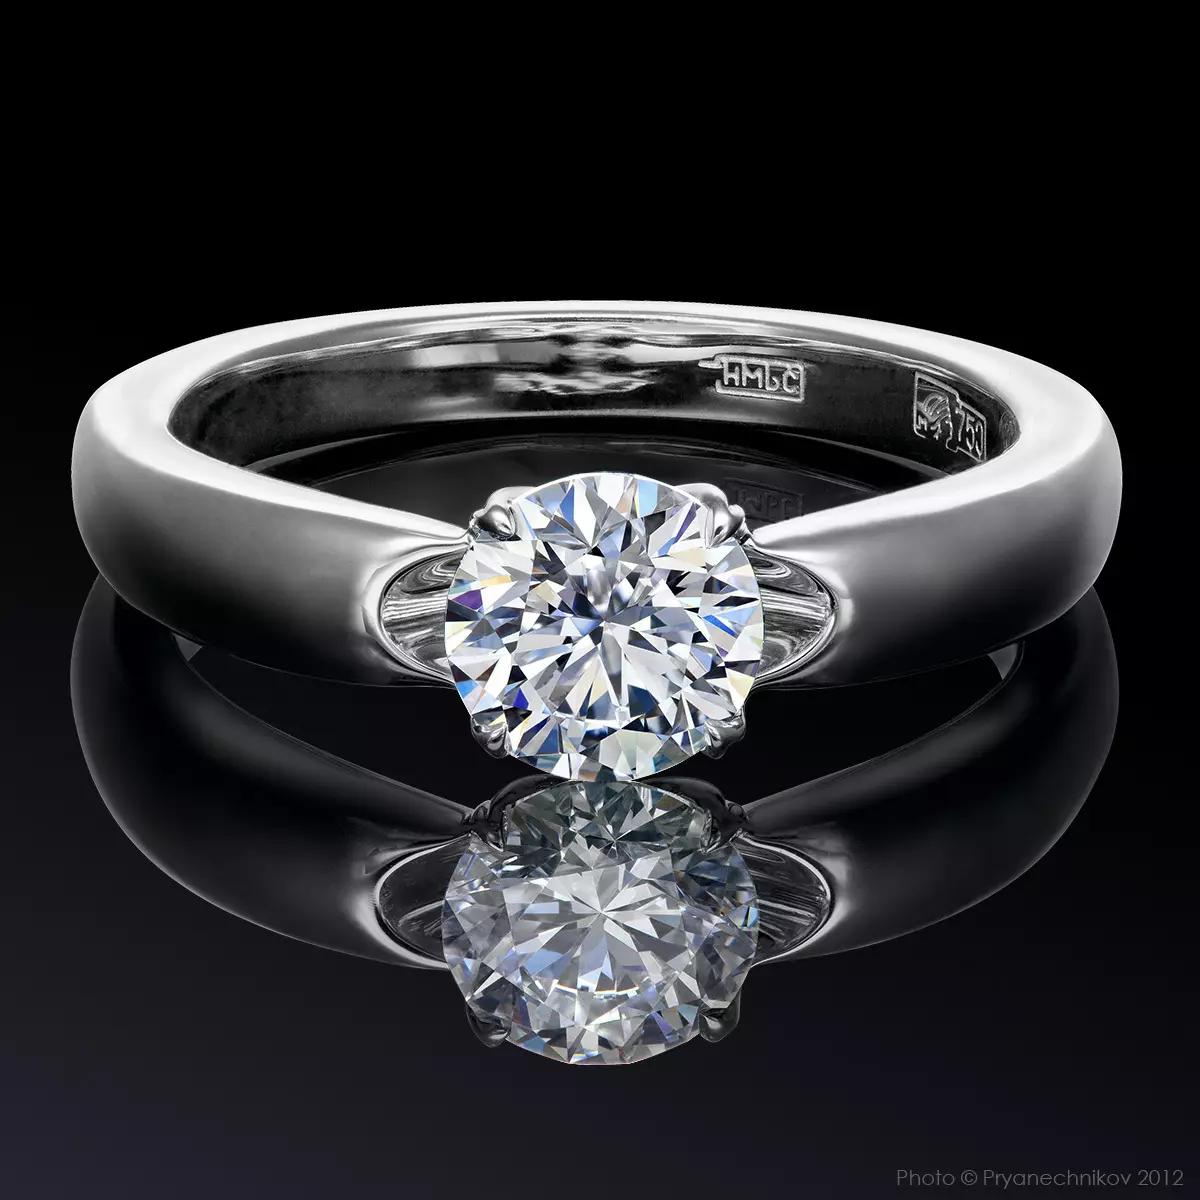 Ювелирное изделие кольцо с бриллиантом. Даймонд джевелери. Диамонд кольцо с бриллиантами. Кольцо из платины с бриллиантами э0901кц02182000. Платиновые украшения.